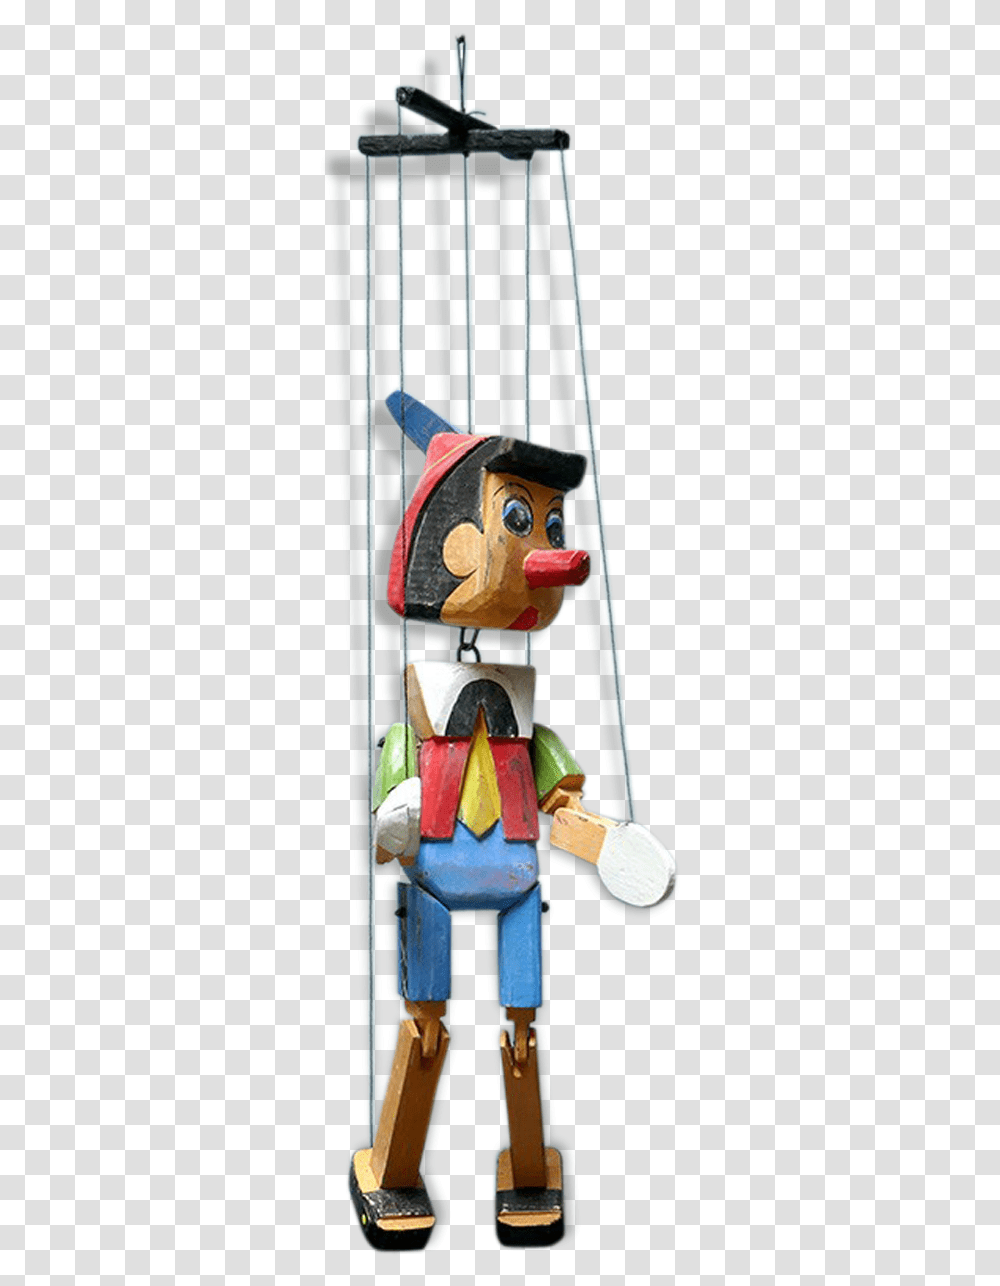 Puppet Pinocchio 60Src Https Pinocchio Marionnette, Architecture, Building, Pillar, Emblem Transparent Png